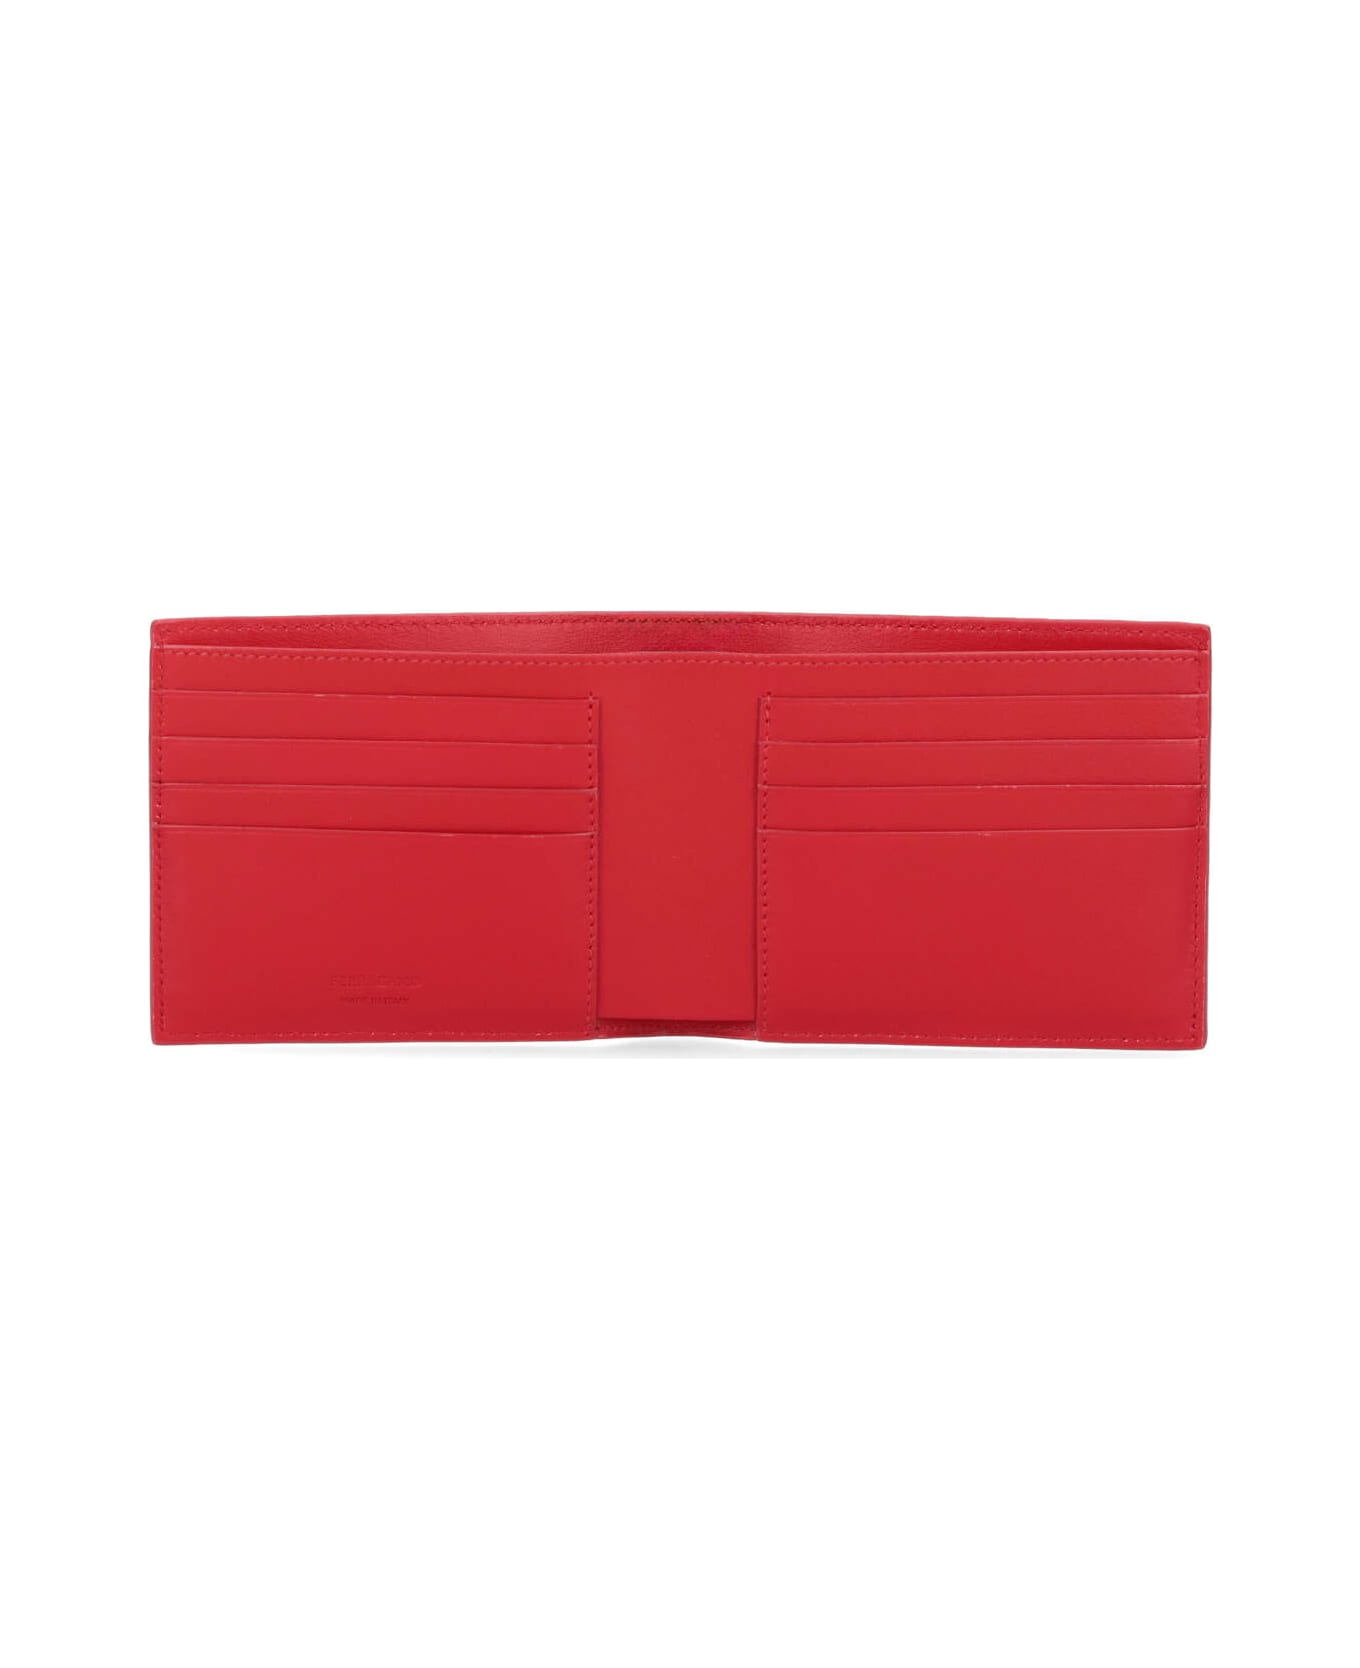 Ferragamo Lizard Wallet - Red